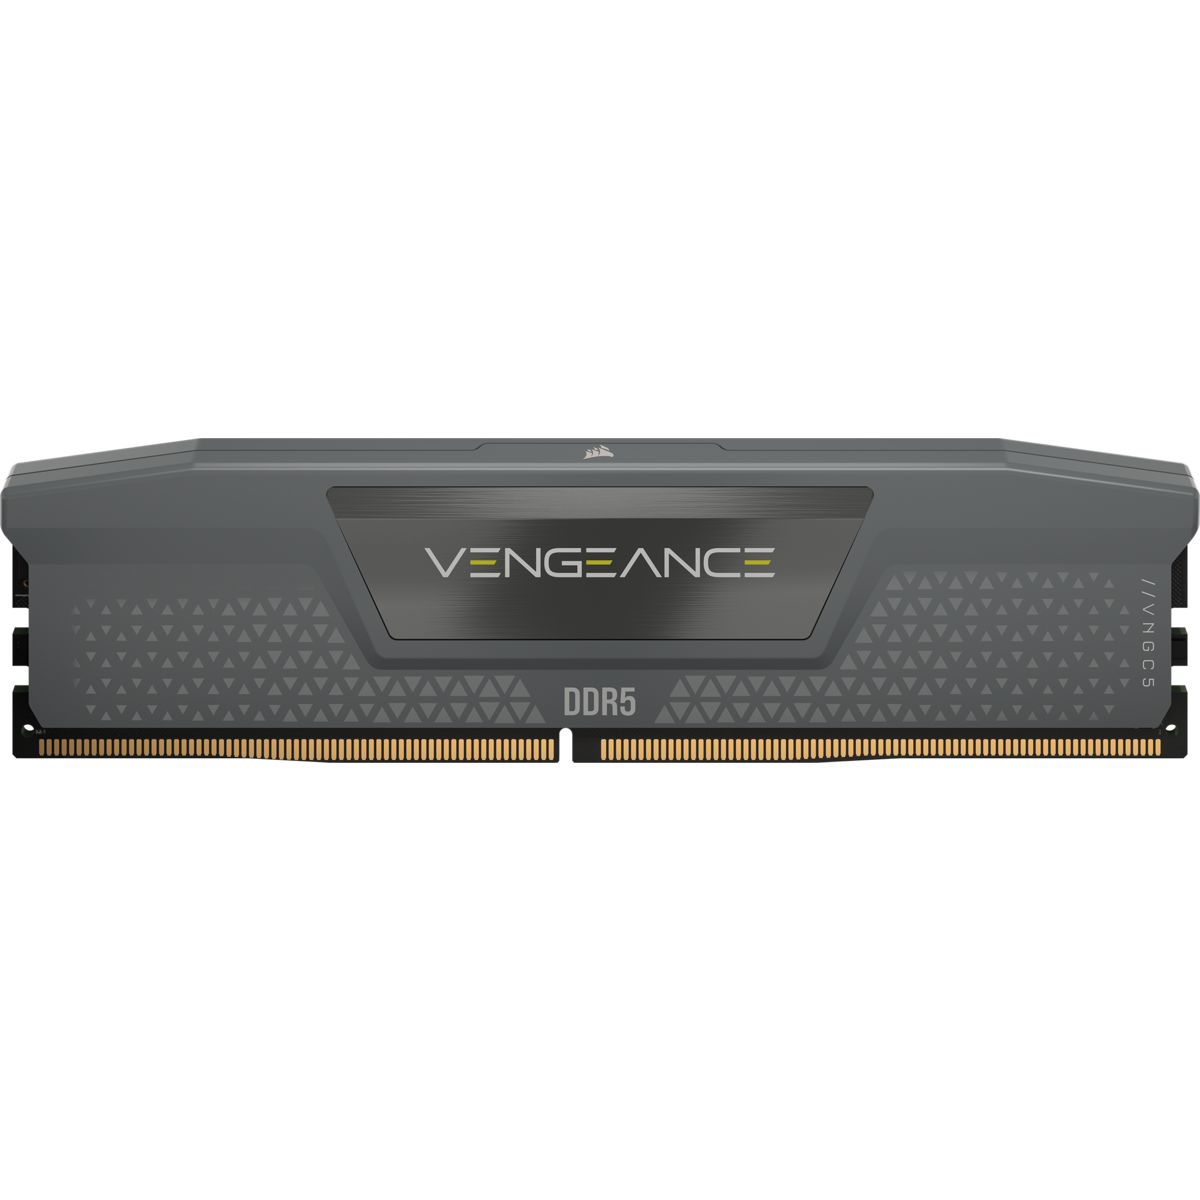 VENGEANCE DDR5 1